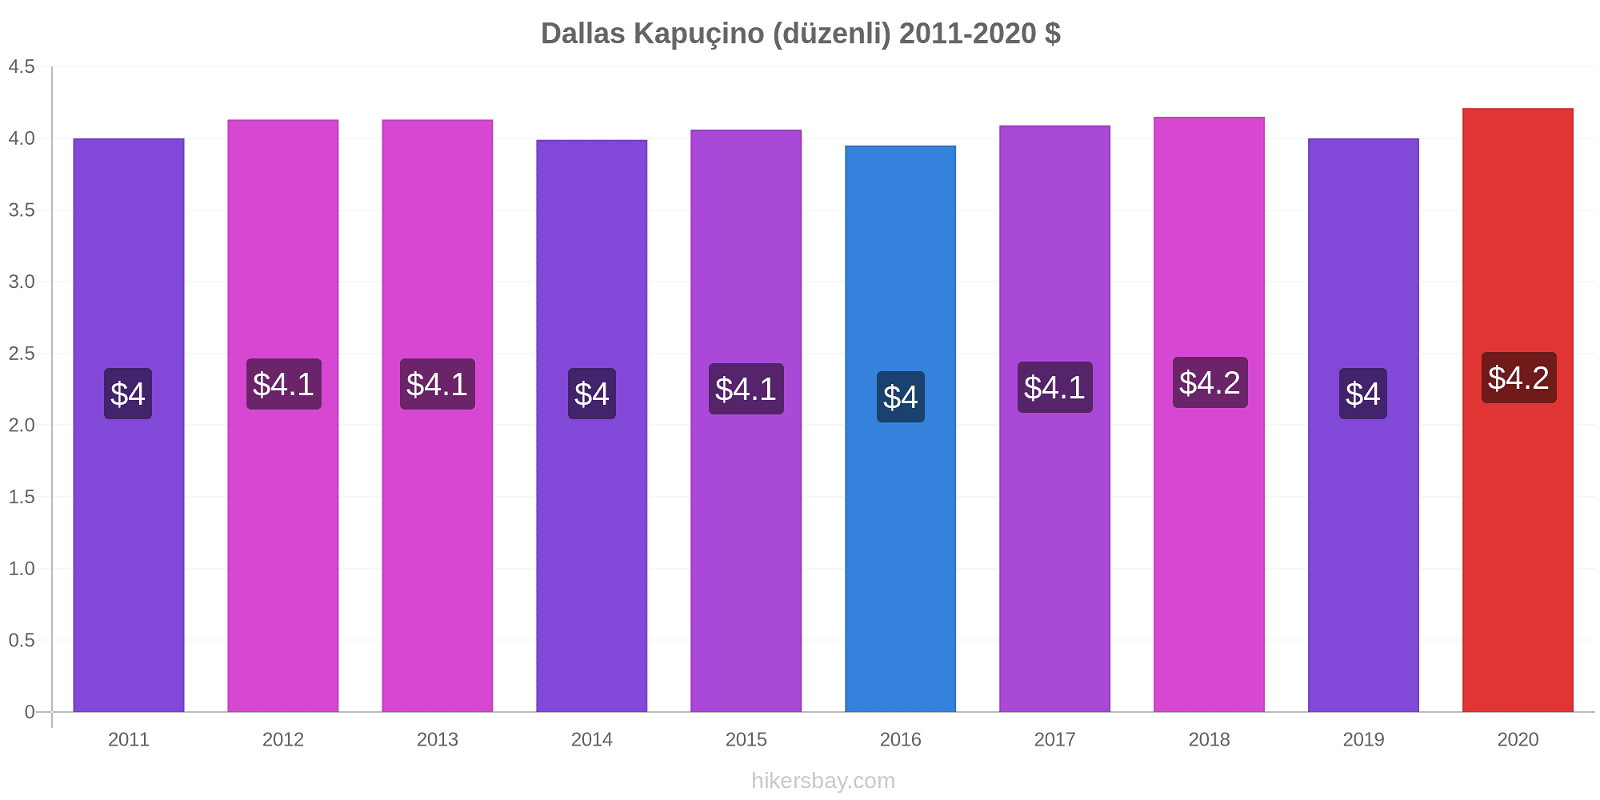 Dallas fiyat değişiklikleri Kapuçino (düzenli) hikersbay.com